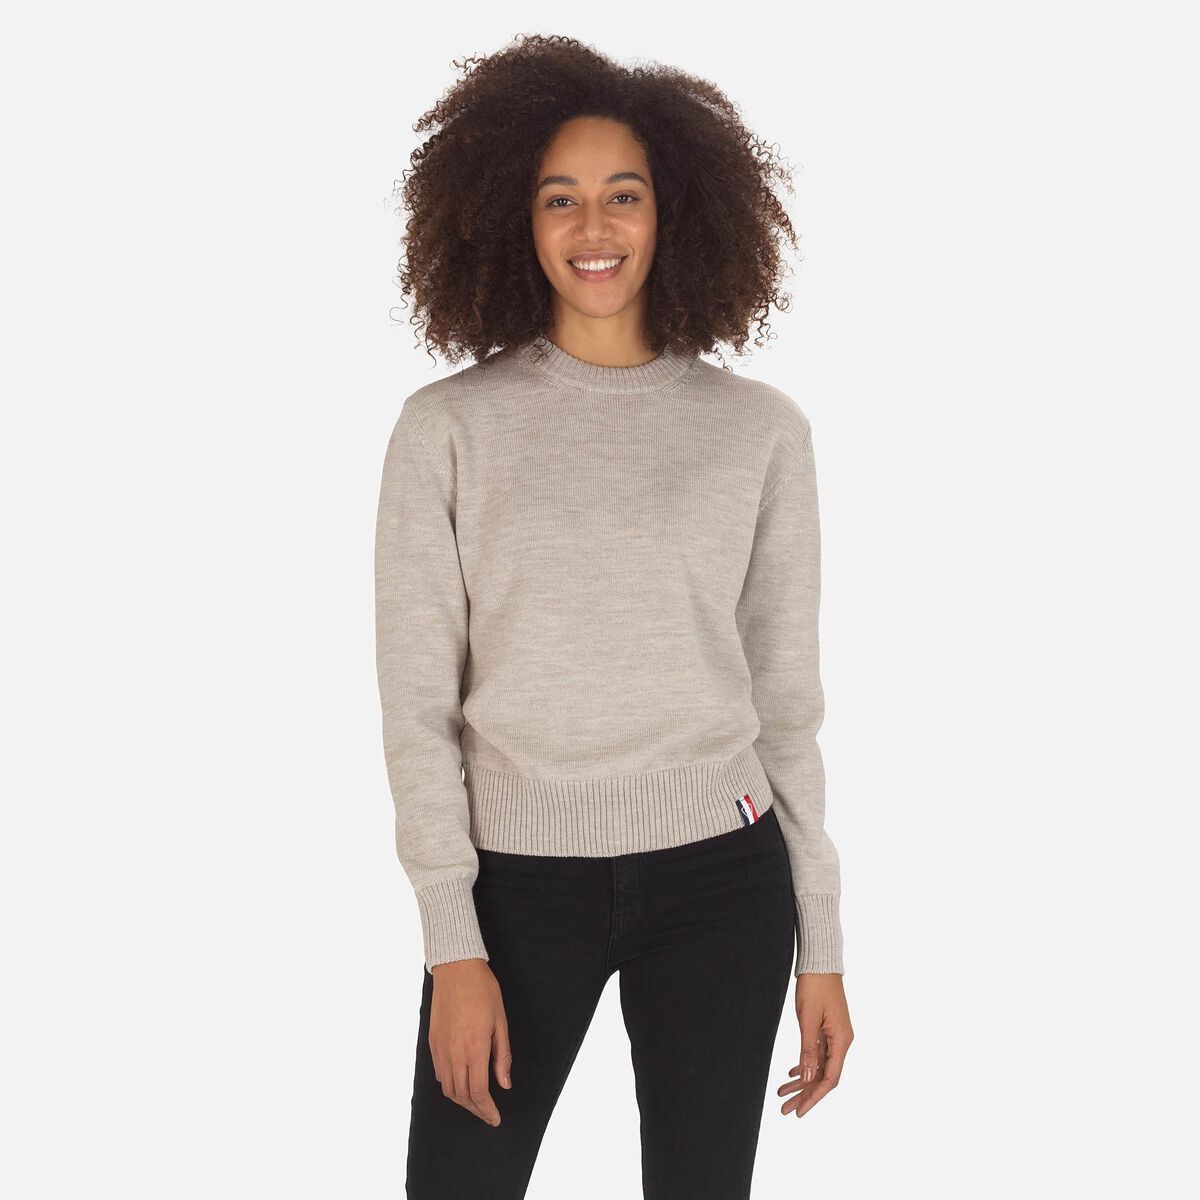 Women's Plain Knit Sweater